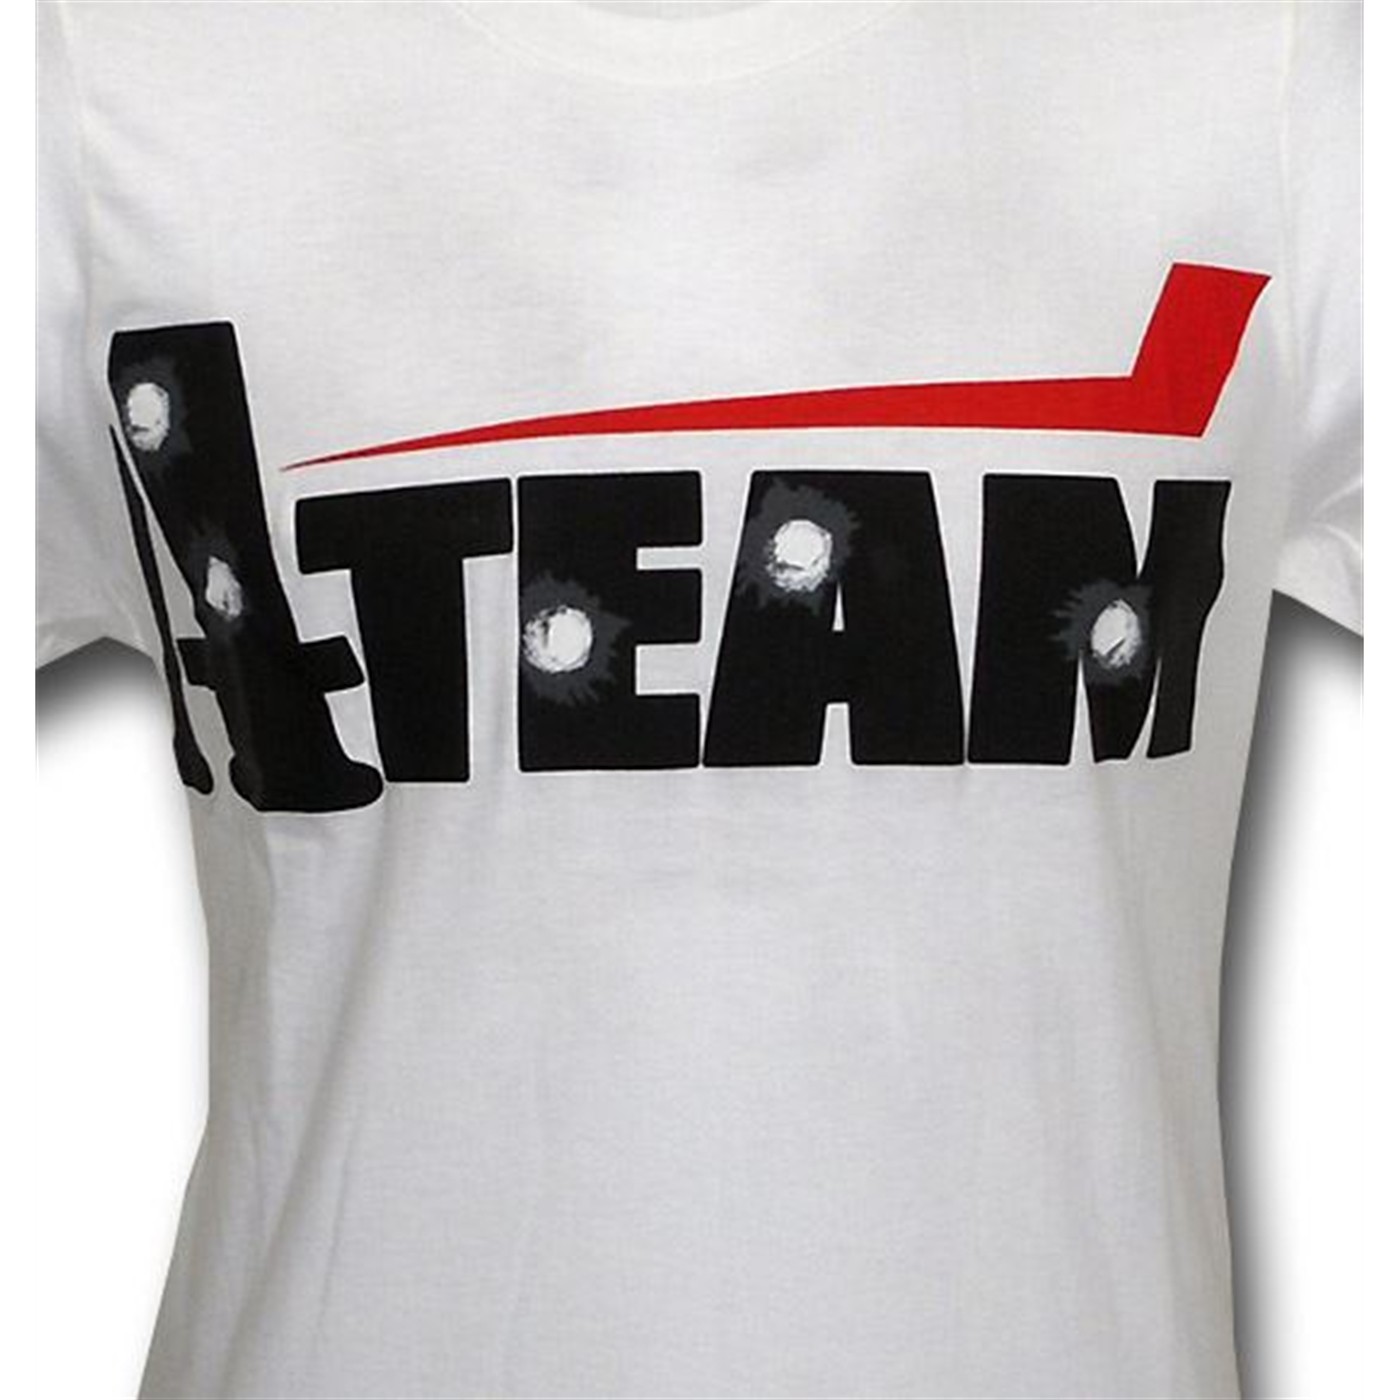 A-Team Shot Up Logo (30 Single) T-Shirt